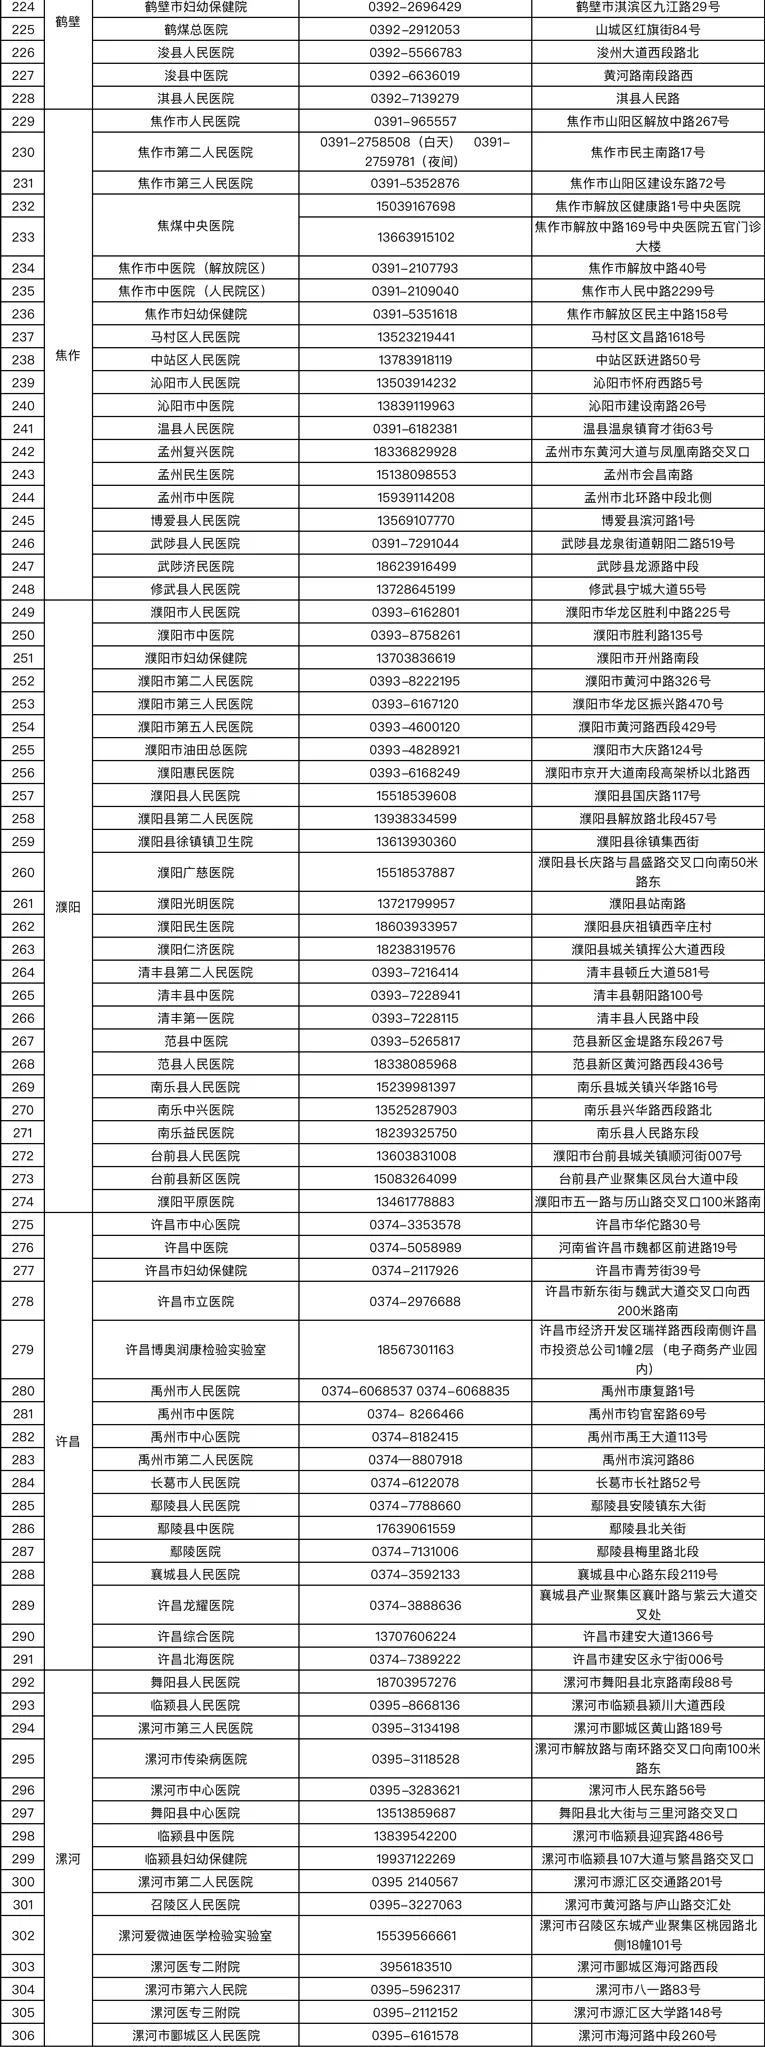 河南省核酸检测机构地图上线 最快6小时内可查报告结果